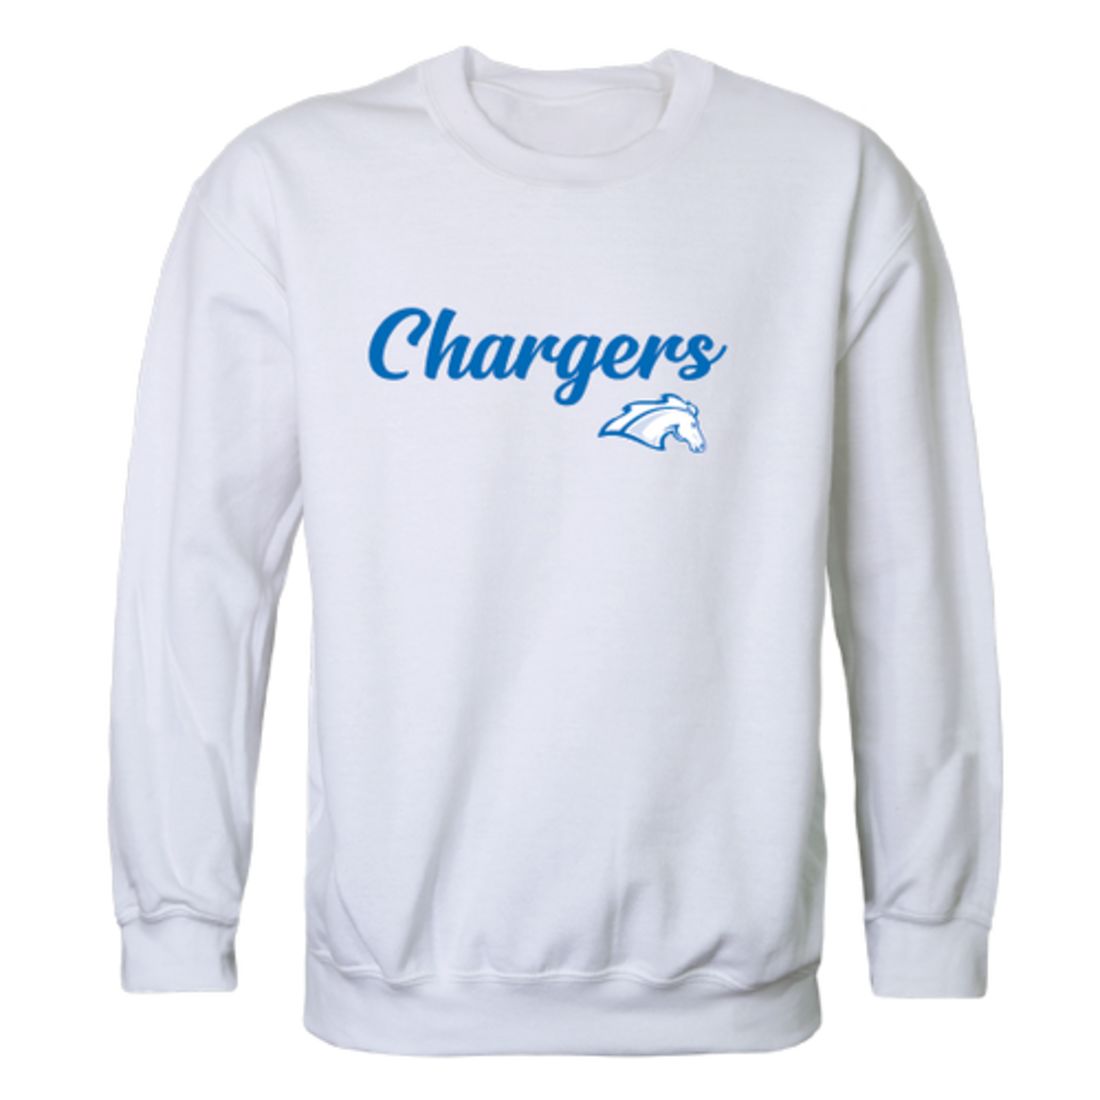 The-University-of-Alabama-in-Huntsville-Chargers-Script-Fleece-Crewneck-Pullover-Sweatshirt